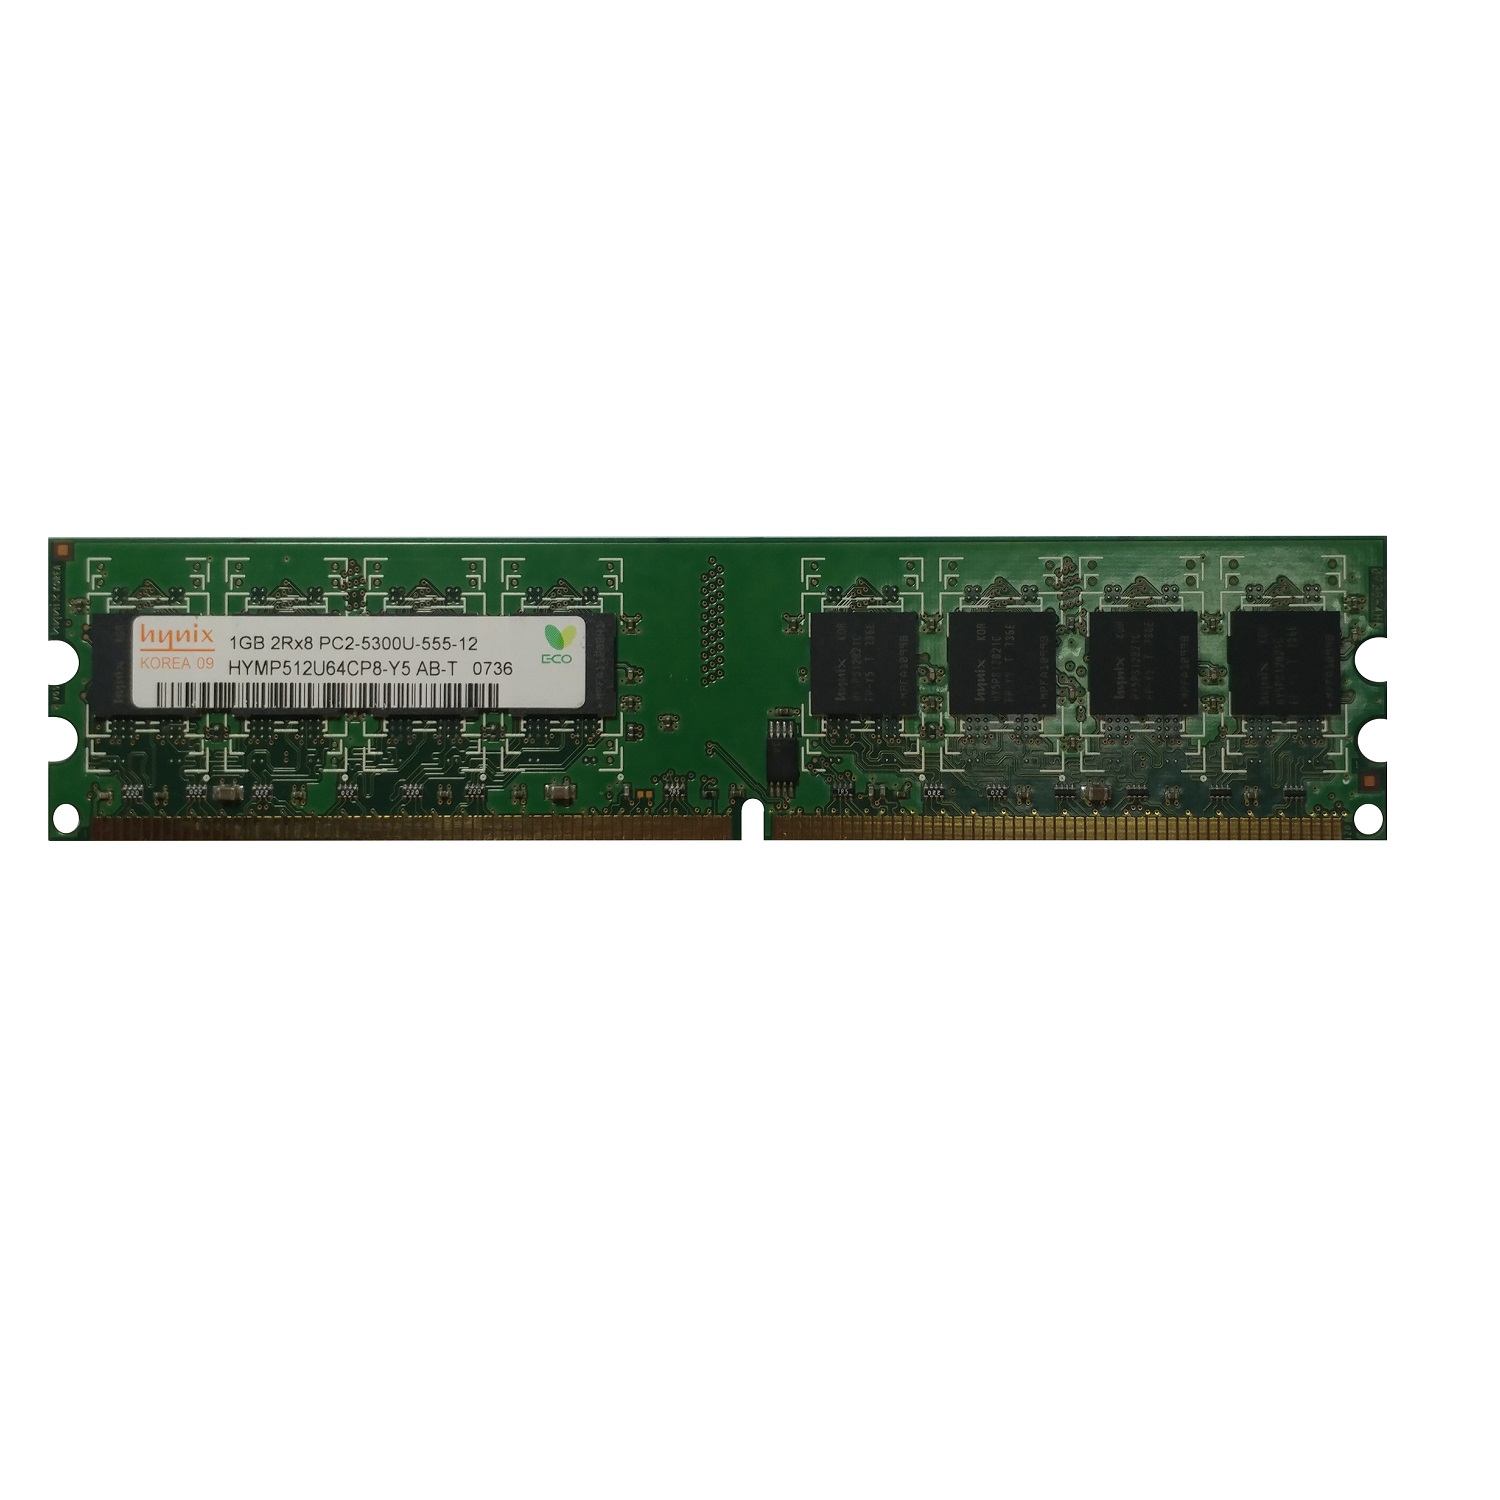 رم دسکتاپ DDR2 تک کاناله 667 مگاهرتز CL5 هاینیکس مدل HYMP512U64CP8-Y5 ظرفیت 1 گیگابایت